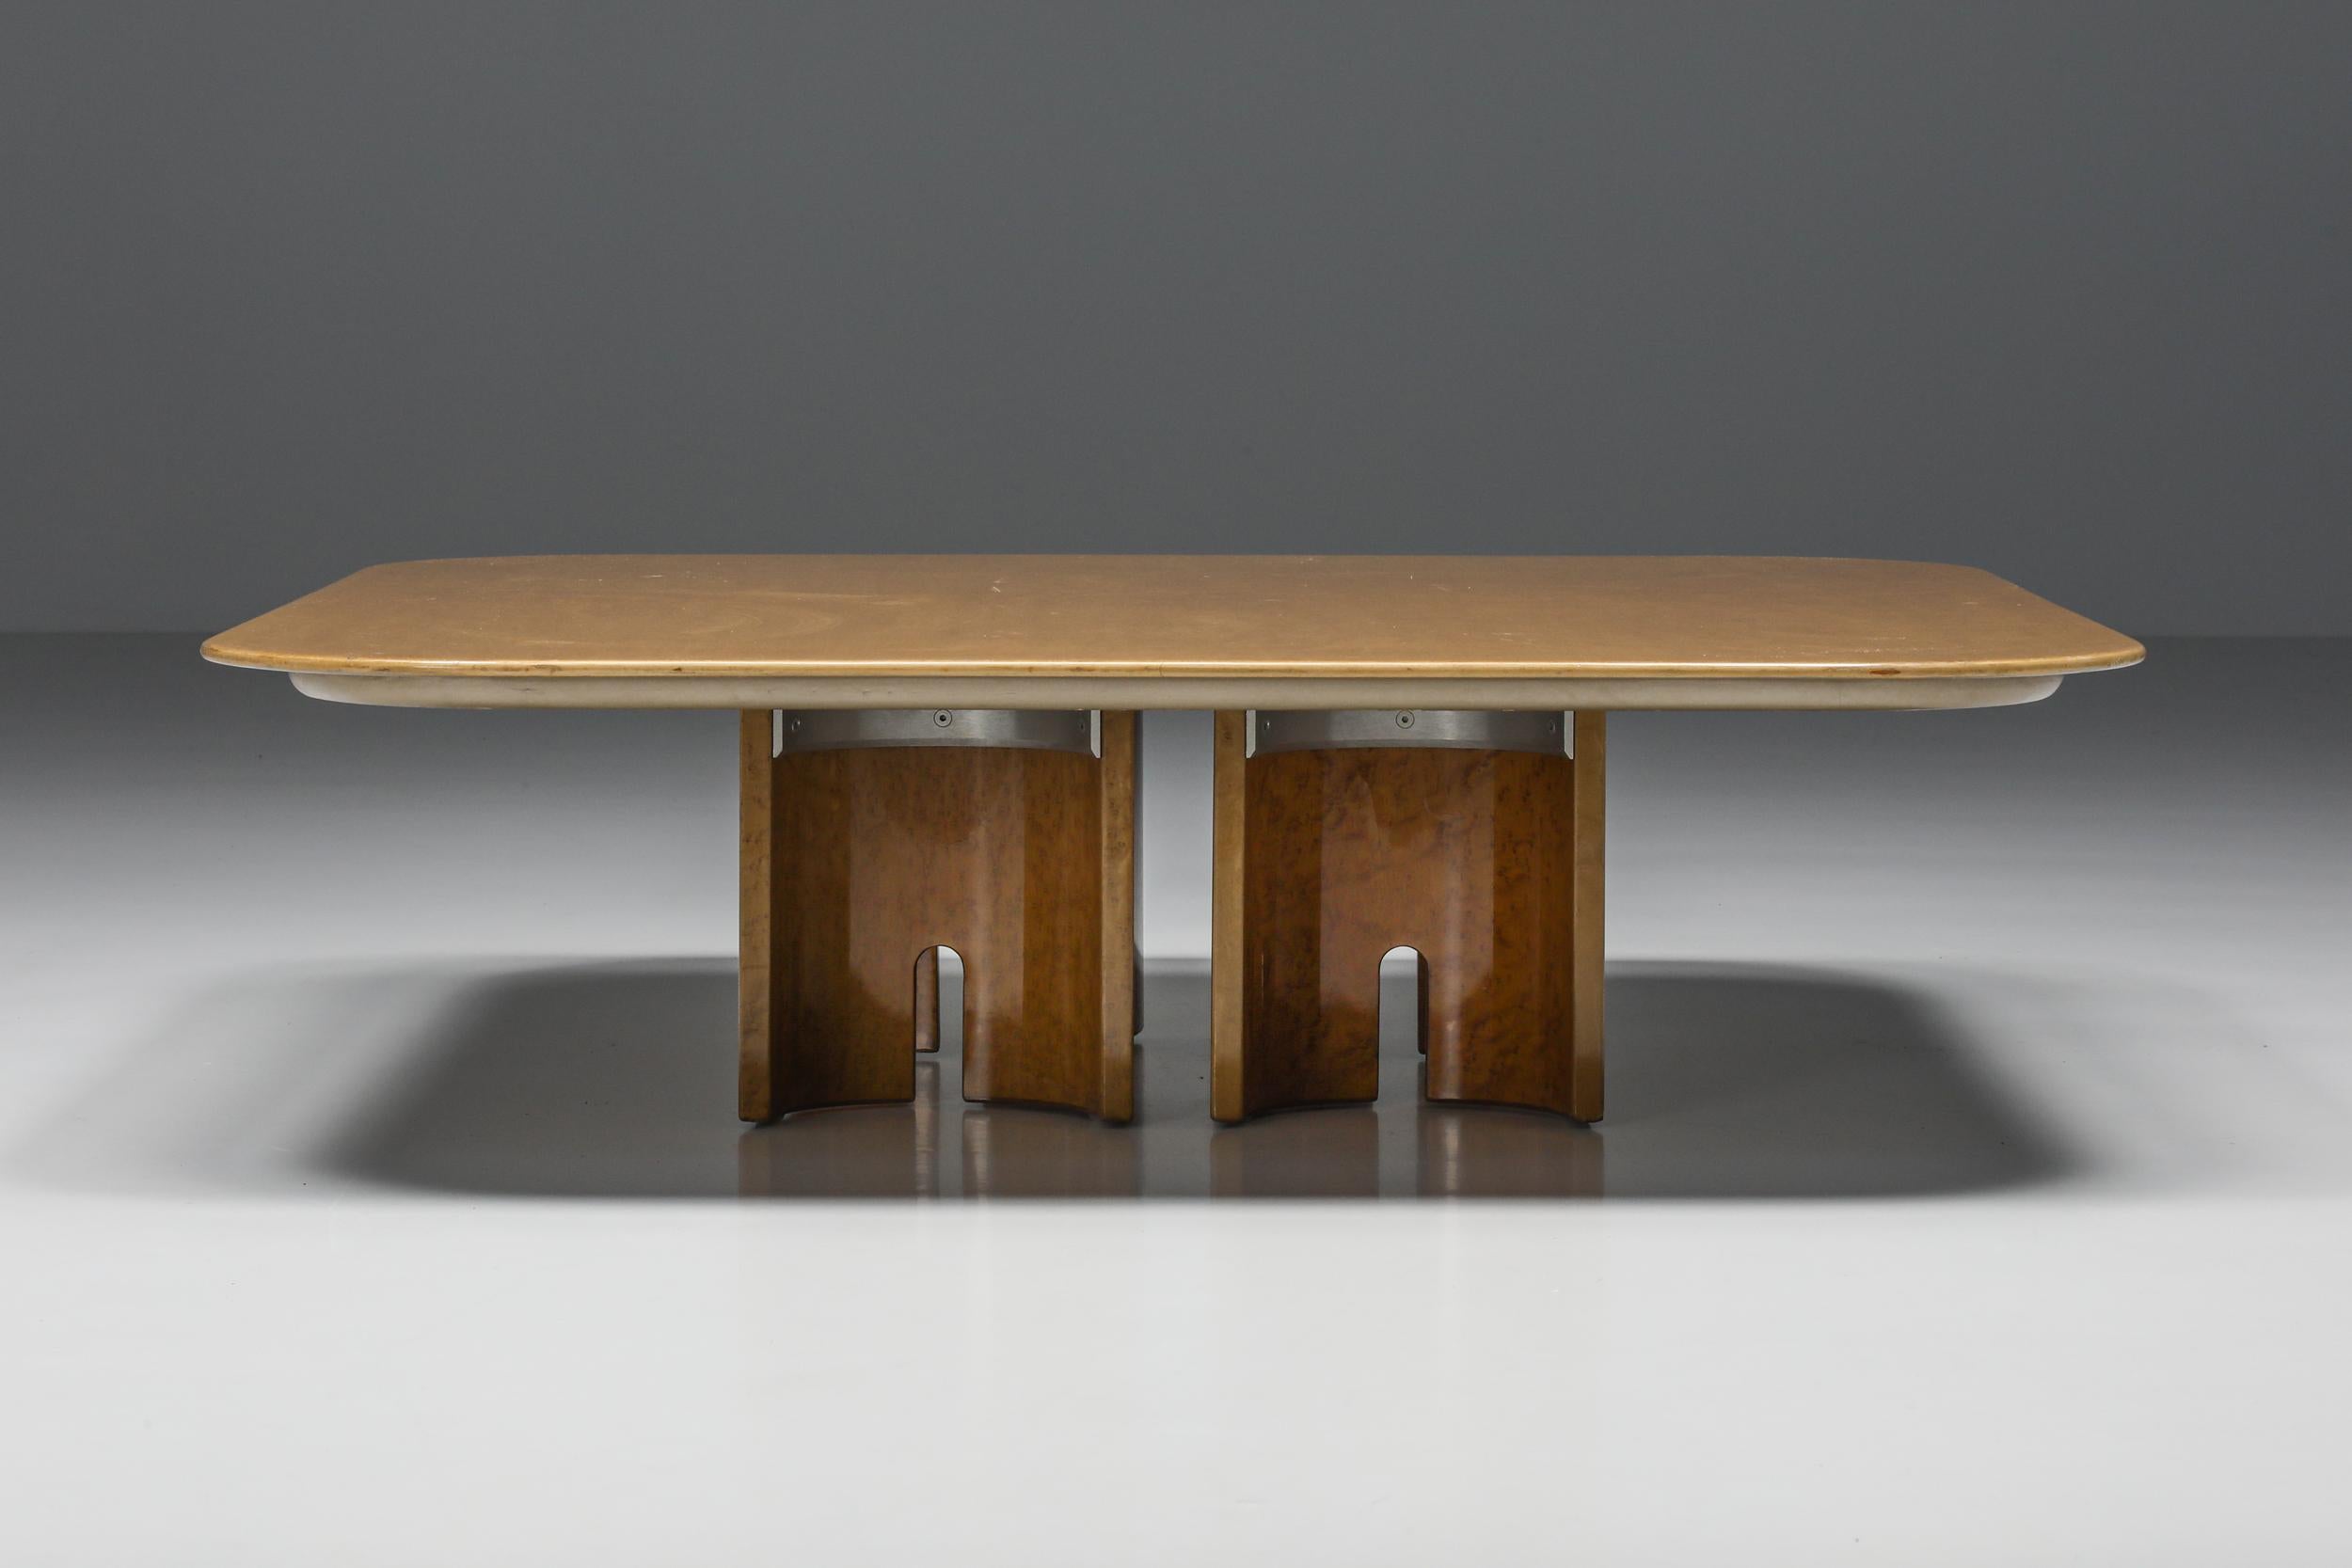 Post-Modern Giovanni Offredi Burl Coffee Table for Saporiti, Italian Design, 1980's